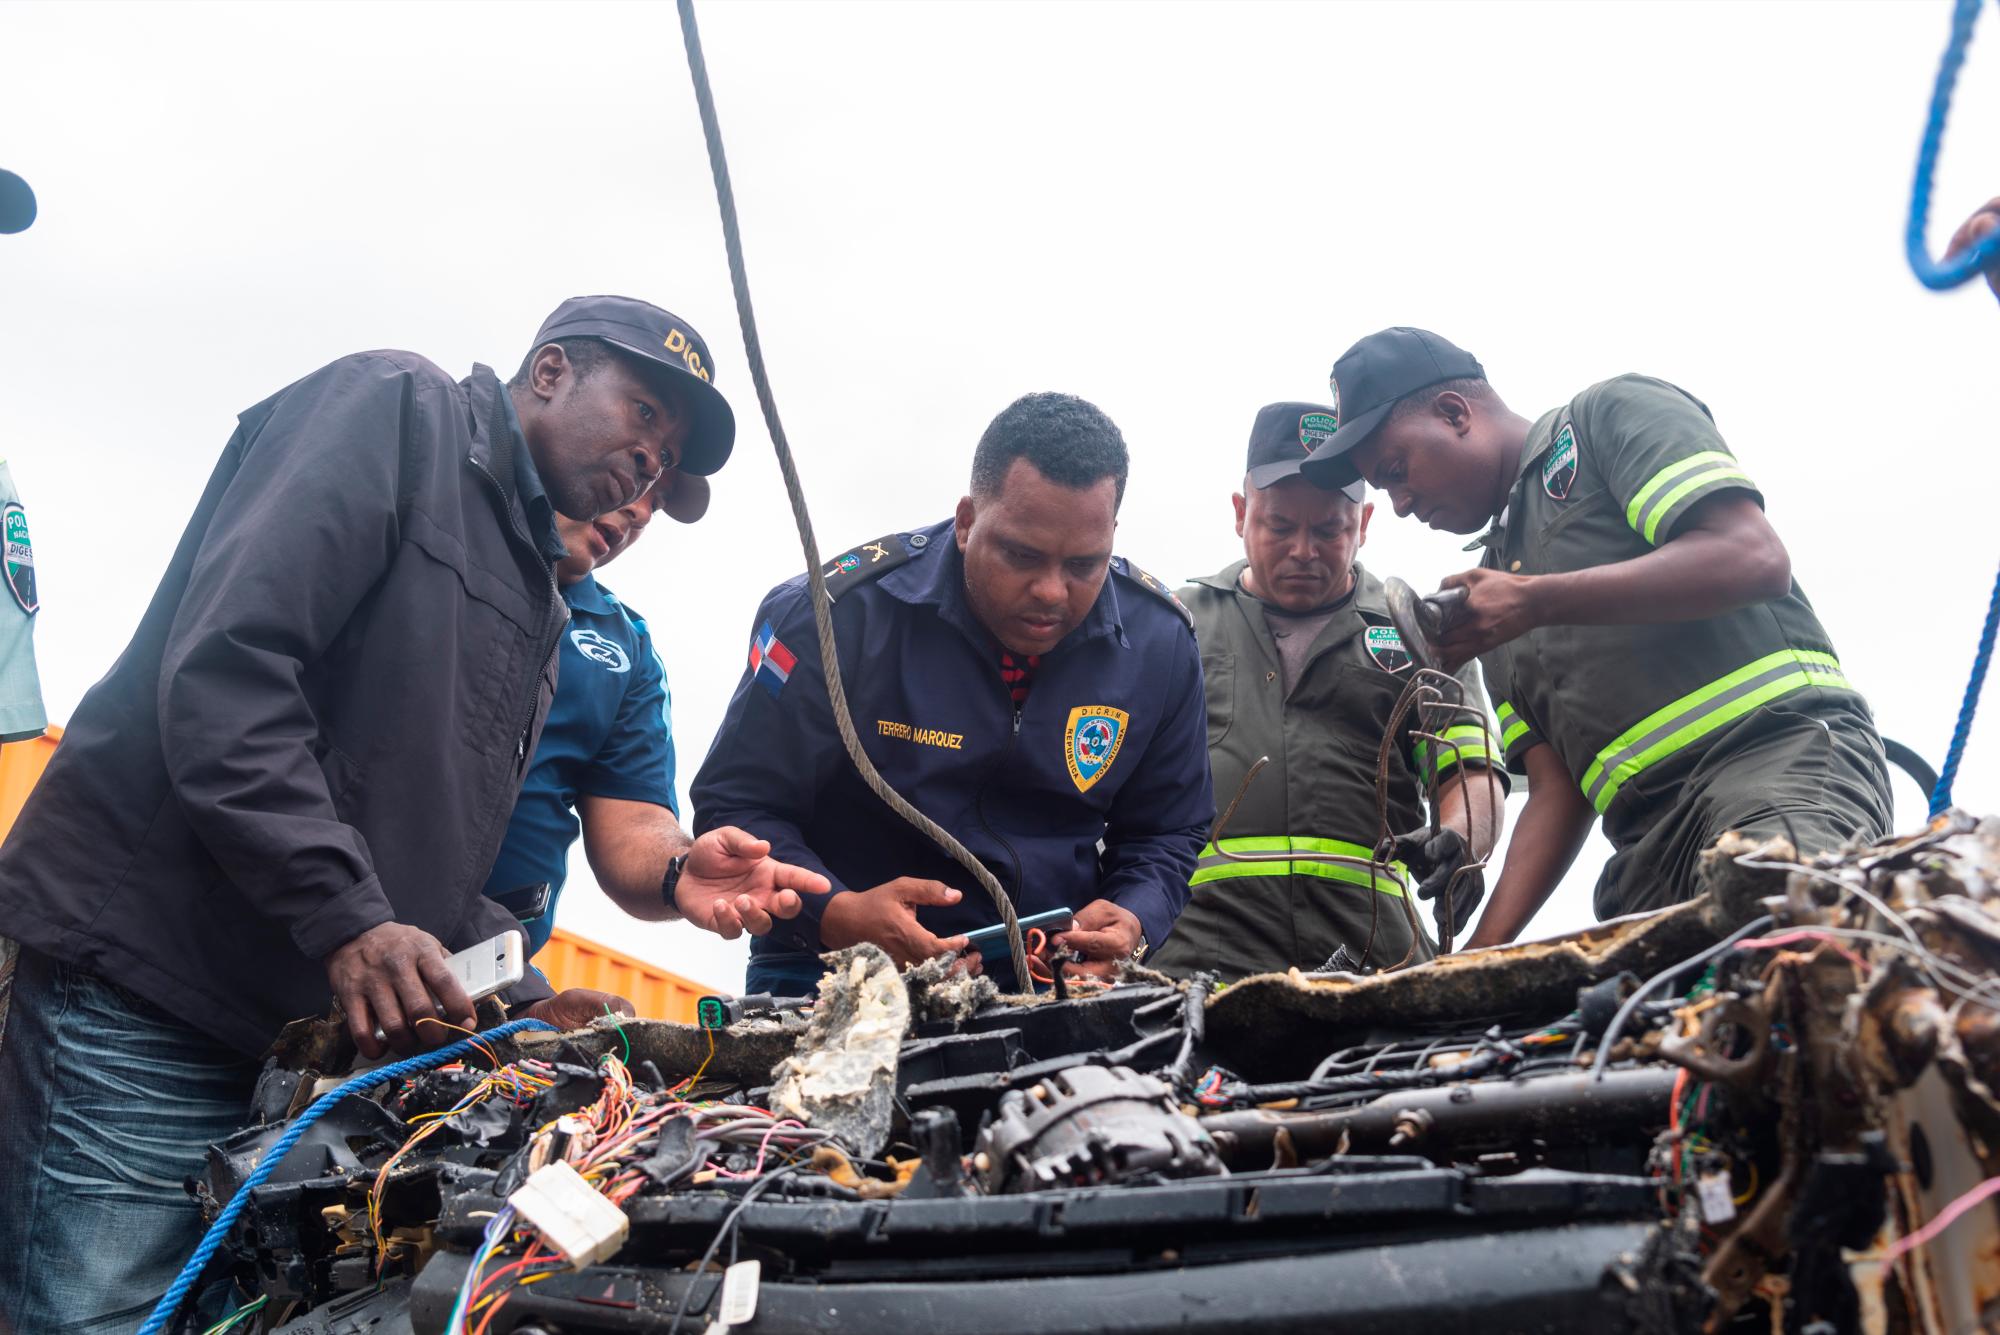 Peritos del departamento DICRIM de la policía nacional inspeccionan el chasis del vehículo sacado de las aguas del mar Caribe y en el cual viajaba la pareja de turistas Portia Denises Revenelle y Orlando Moore en pasado 27 de marzo de 2019. Viernes 12 de abril de 2019.